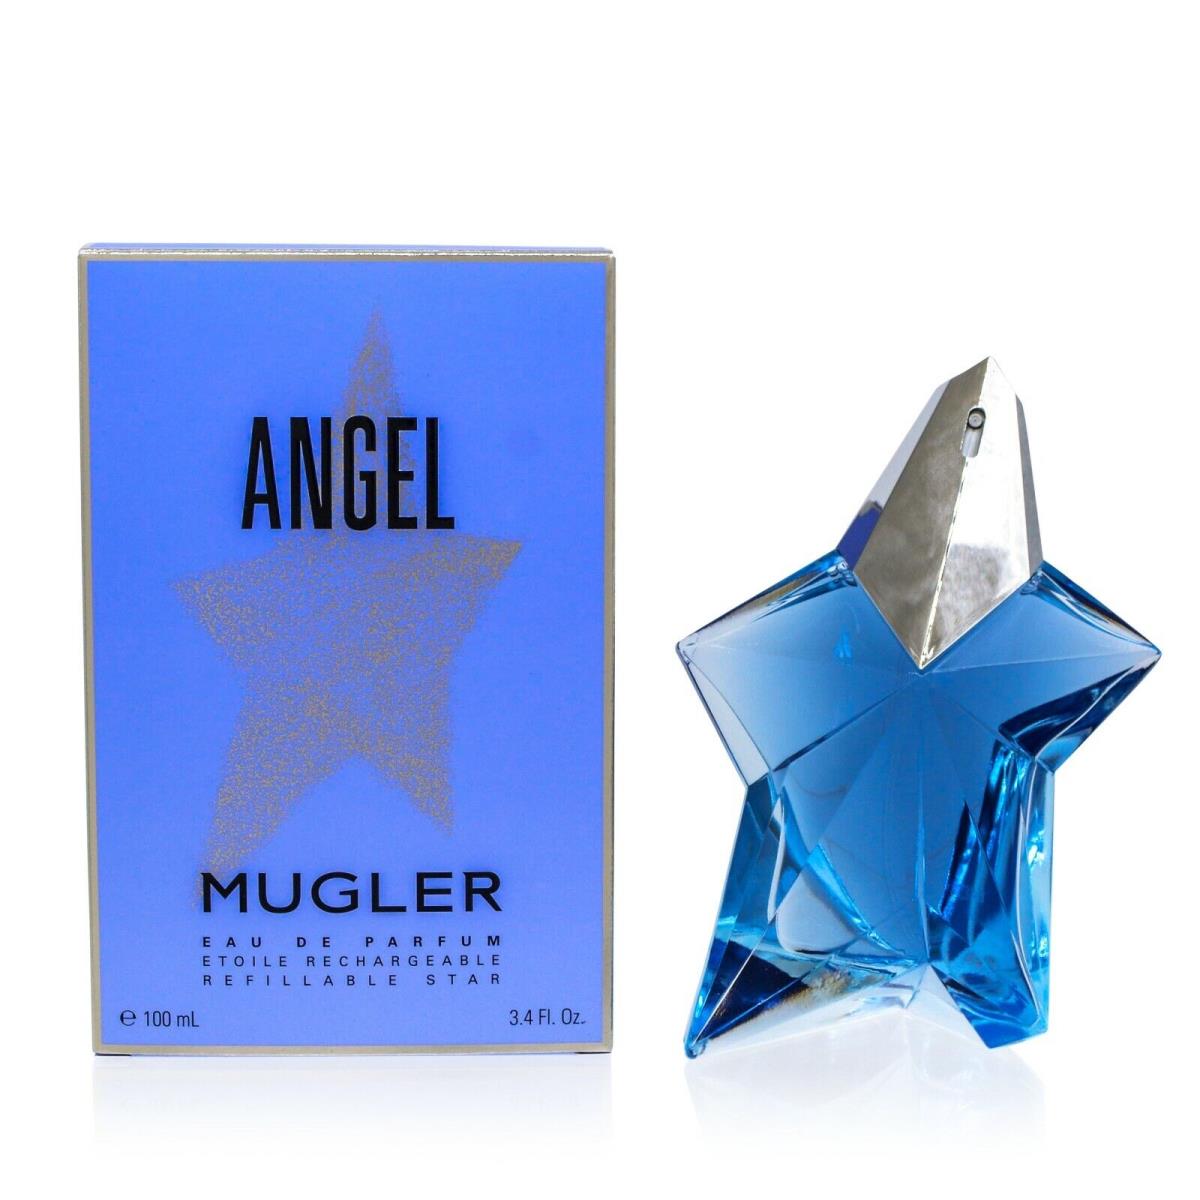 Angel Mugler Edp Spray Refillable Star Packaging 3.4 OZ For Women